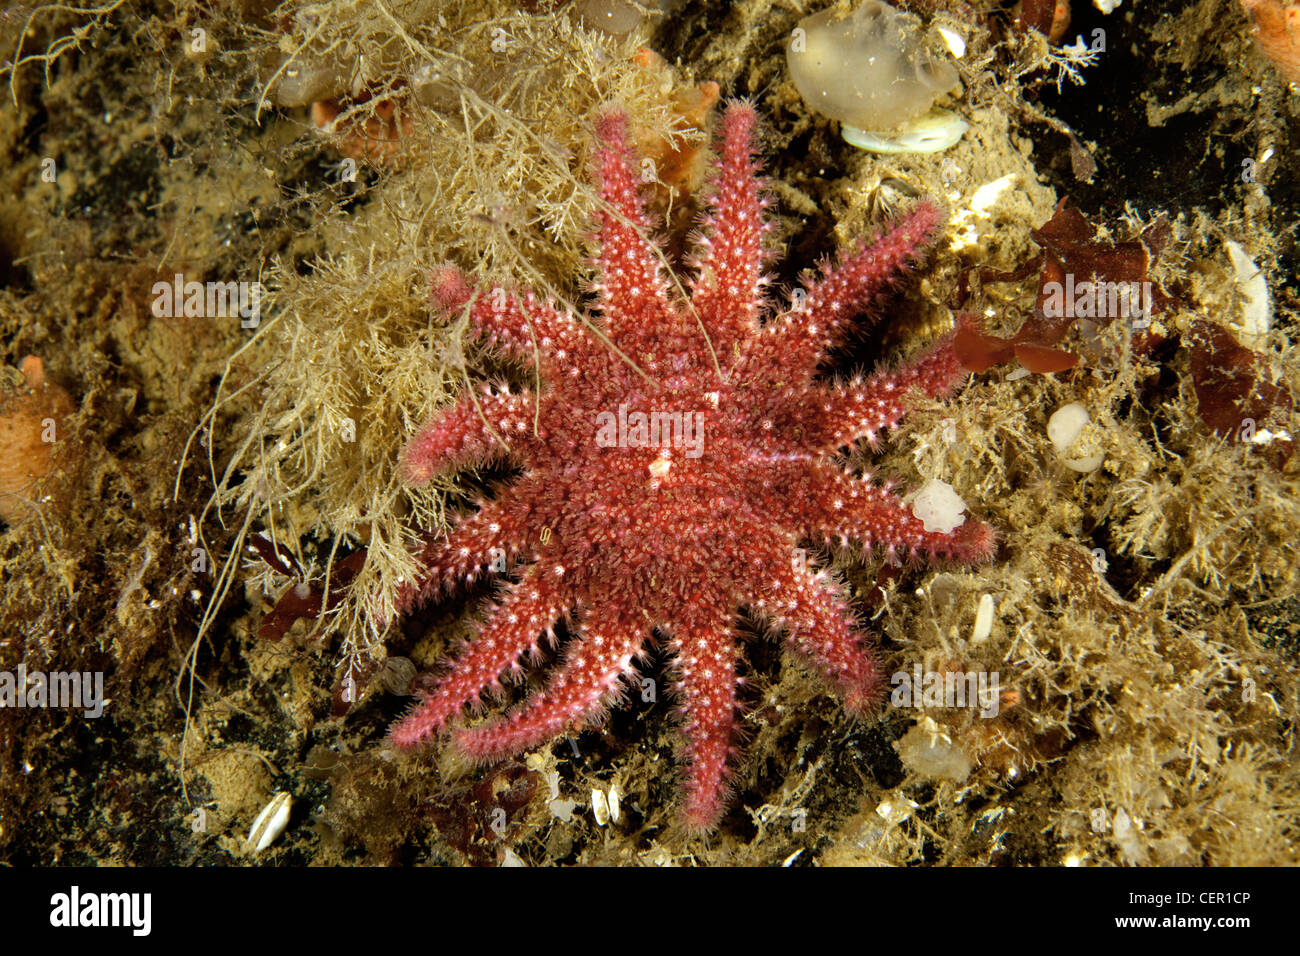 La estrella de mar de cáscara espinosa, Crossaster papposus, Mar Blanco, Karelia, Rusia Foto de stock